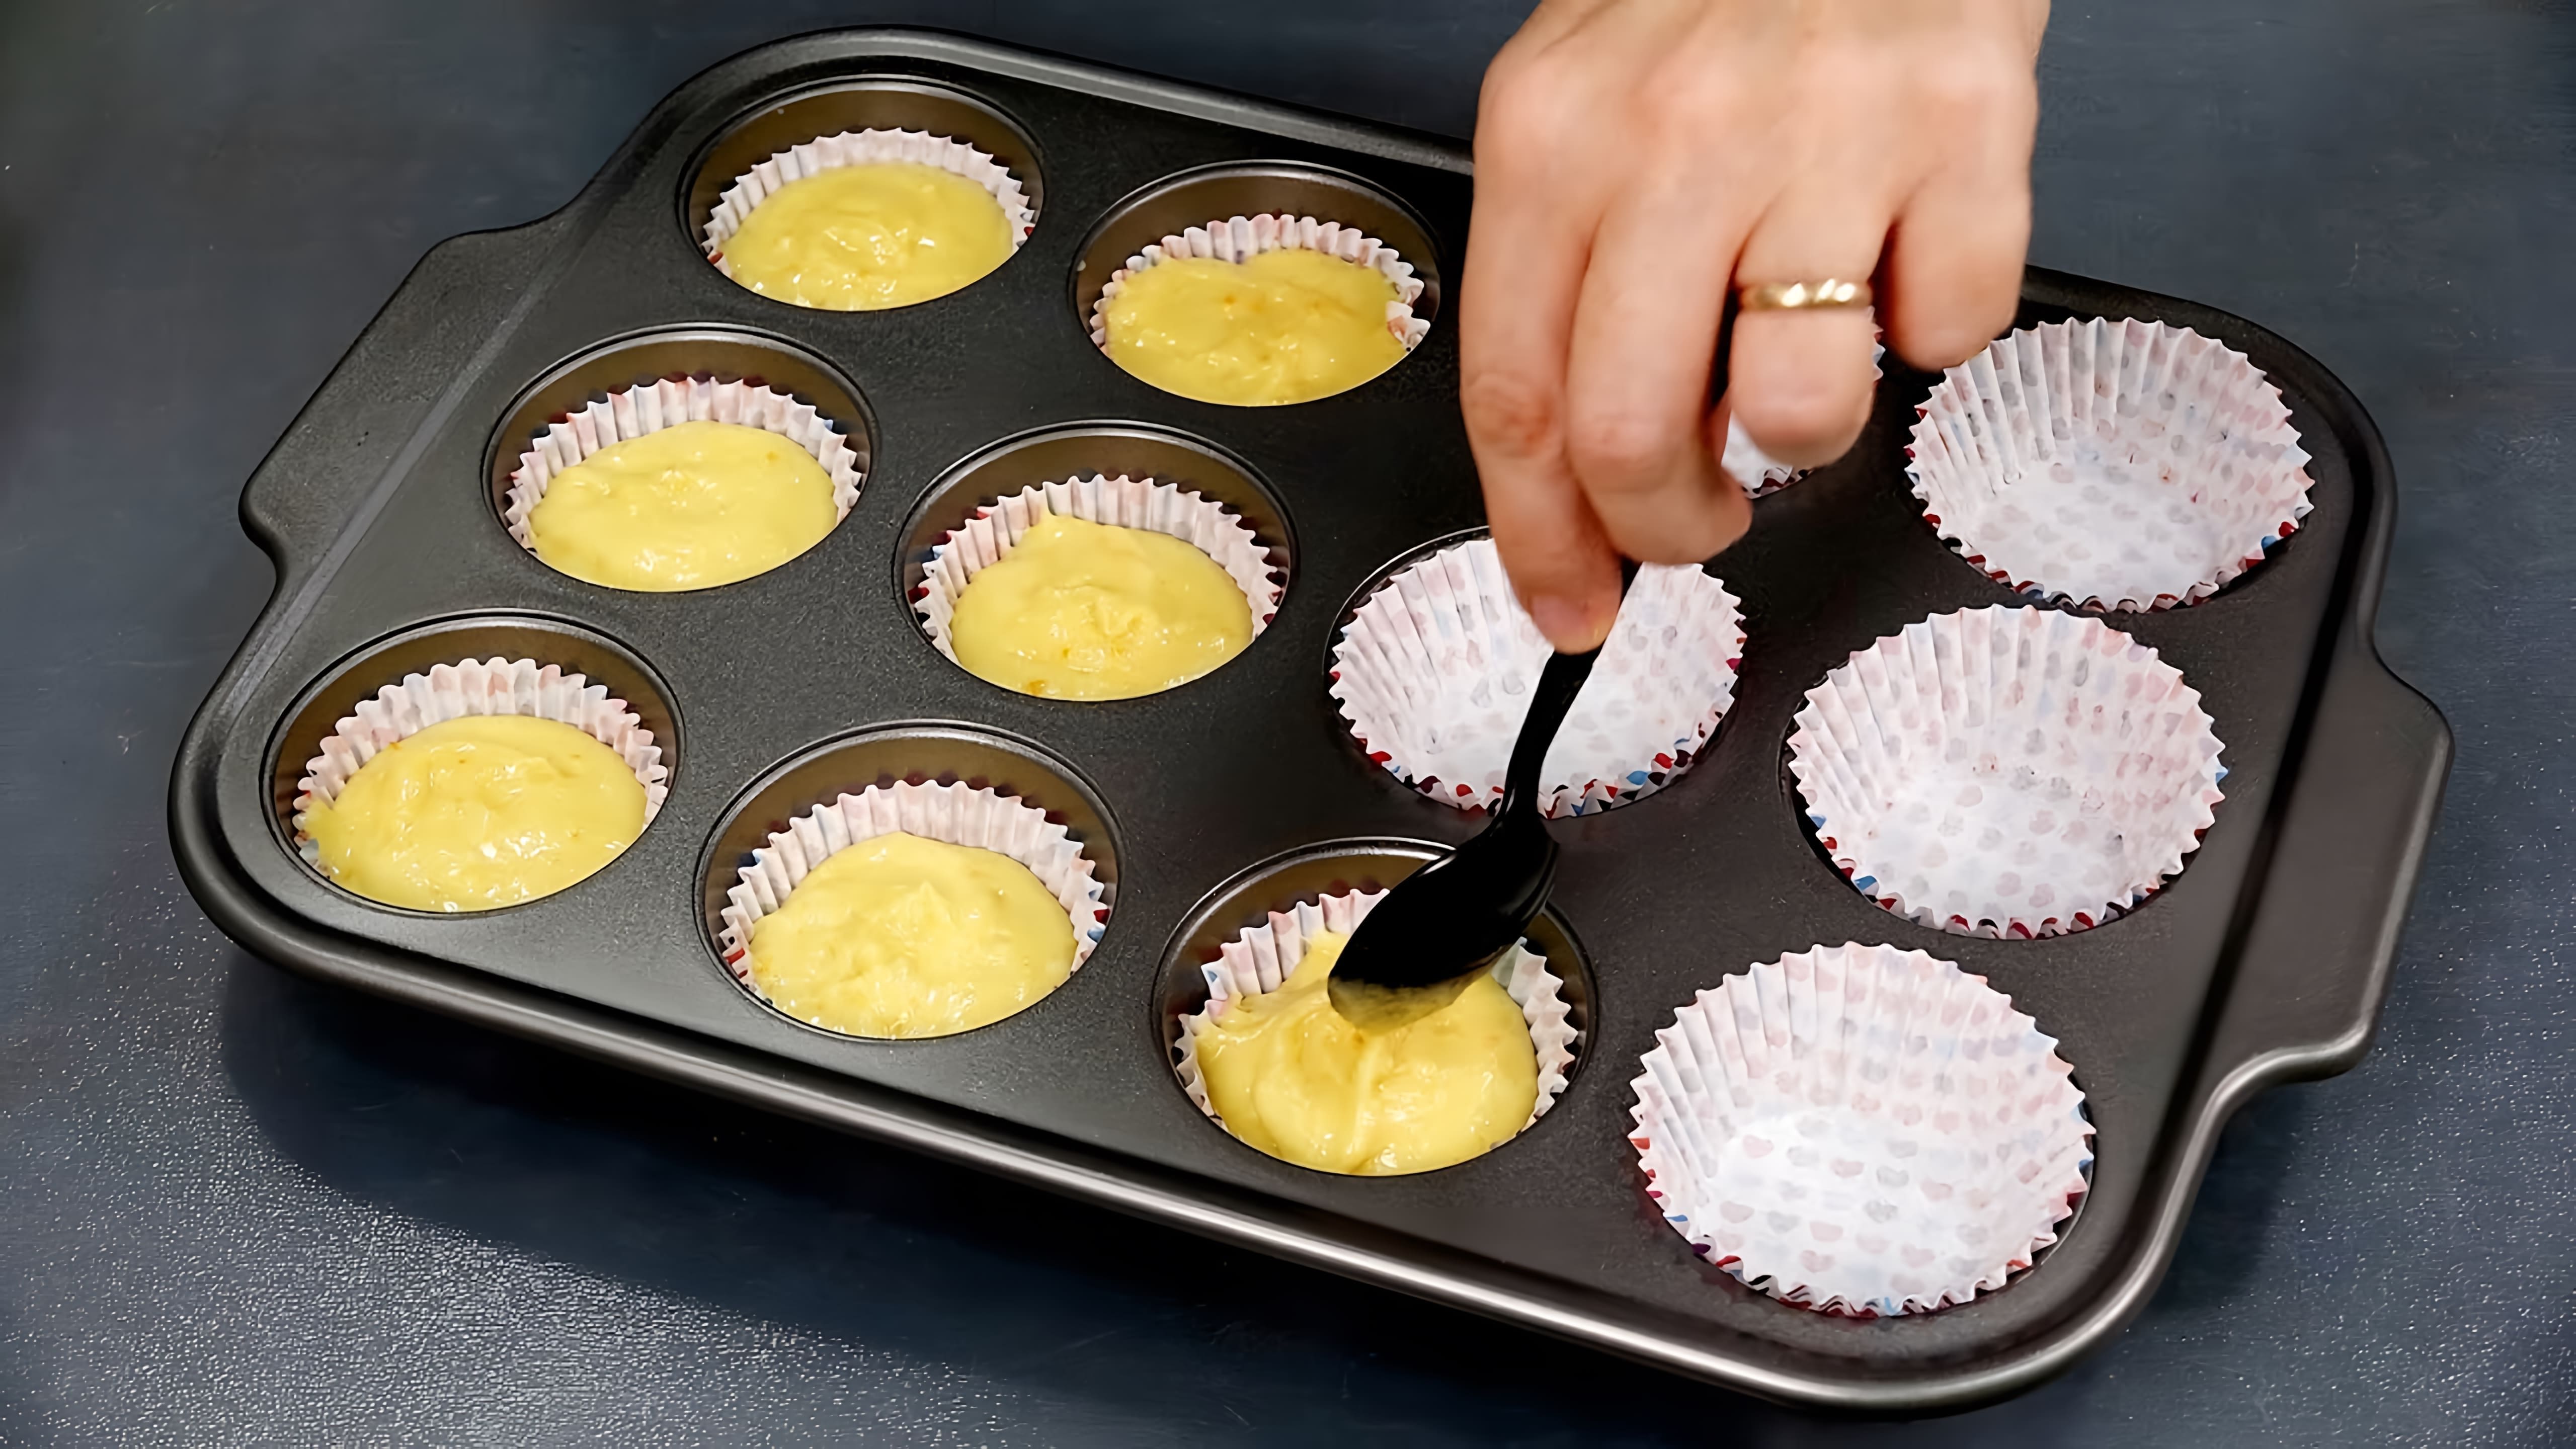 В этом видео показаны 7 простых рецептов десертов, которые можно приготовить дома